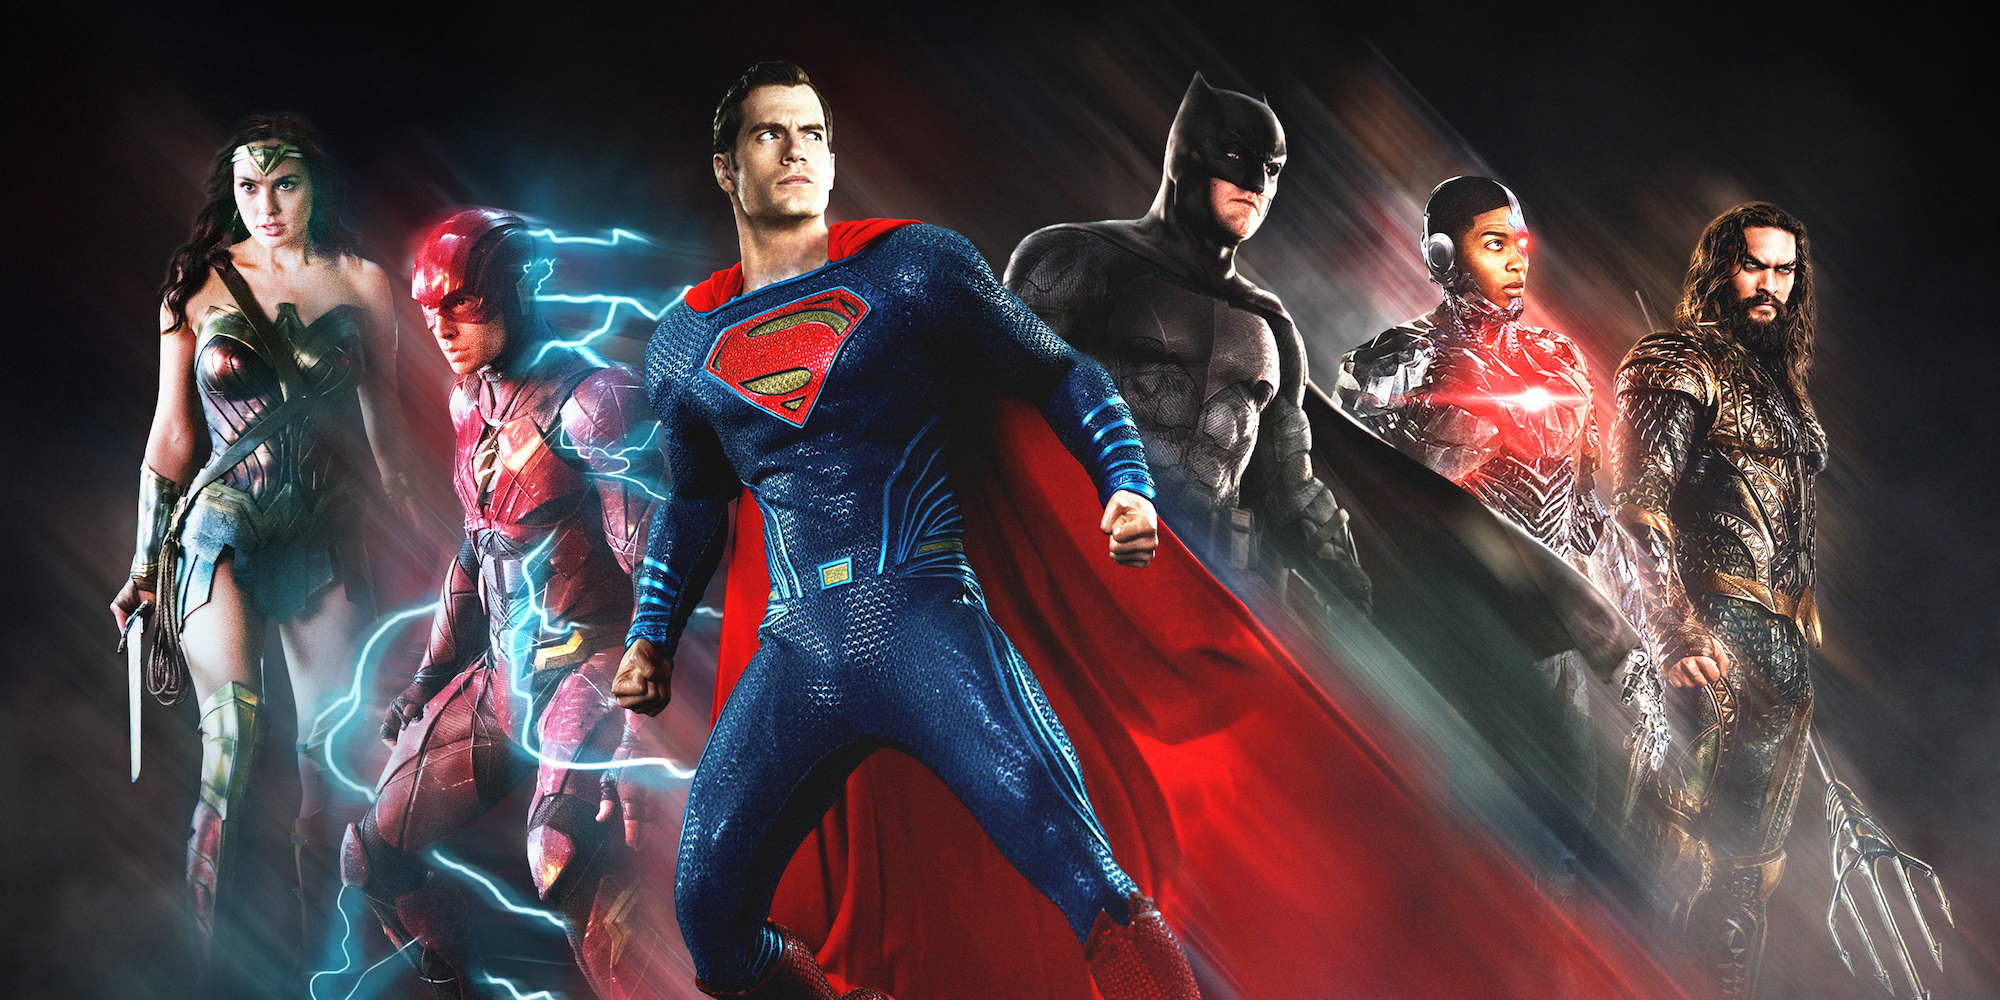 fond d'écran de film de la ligue de justice,super héros,personnage fictif,héros,ligue de justice,figurine